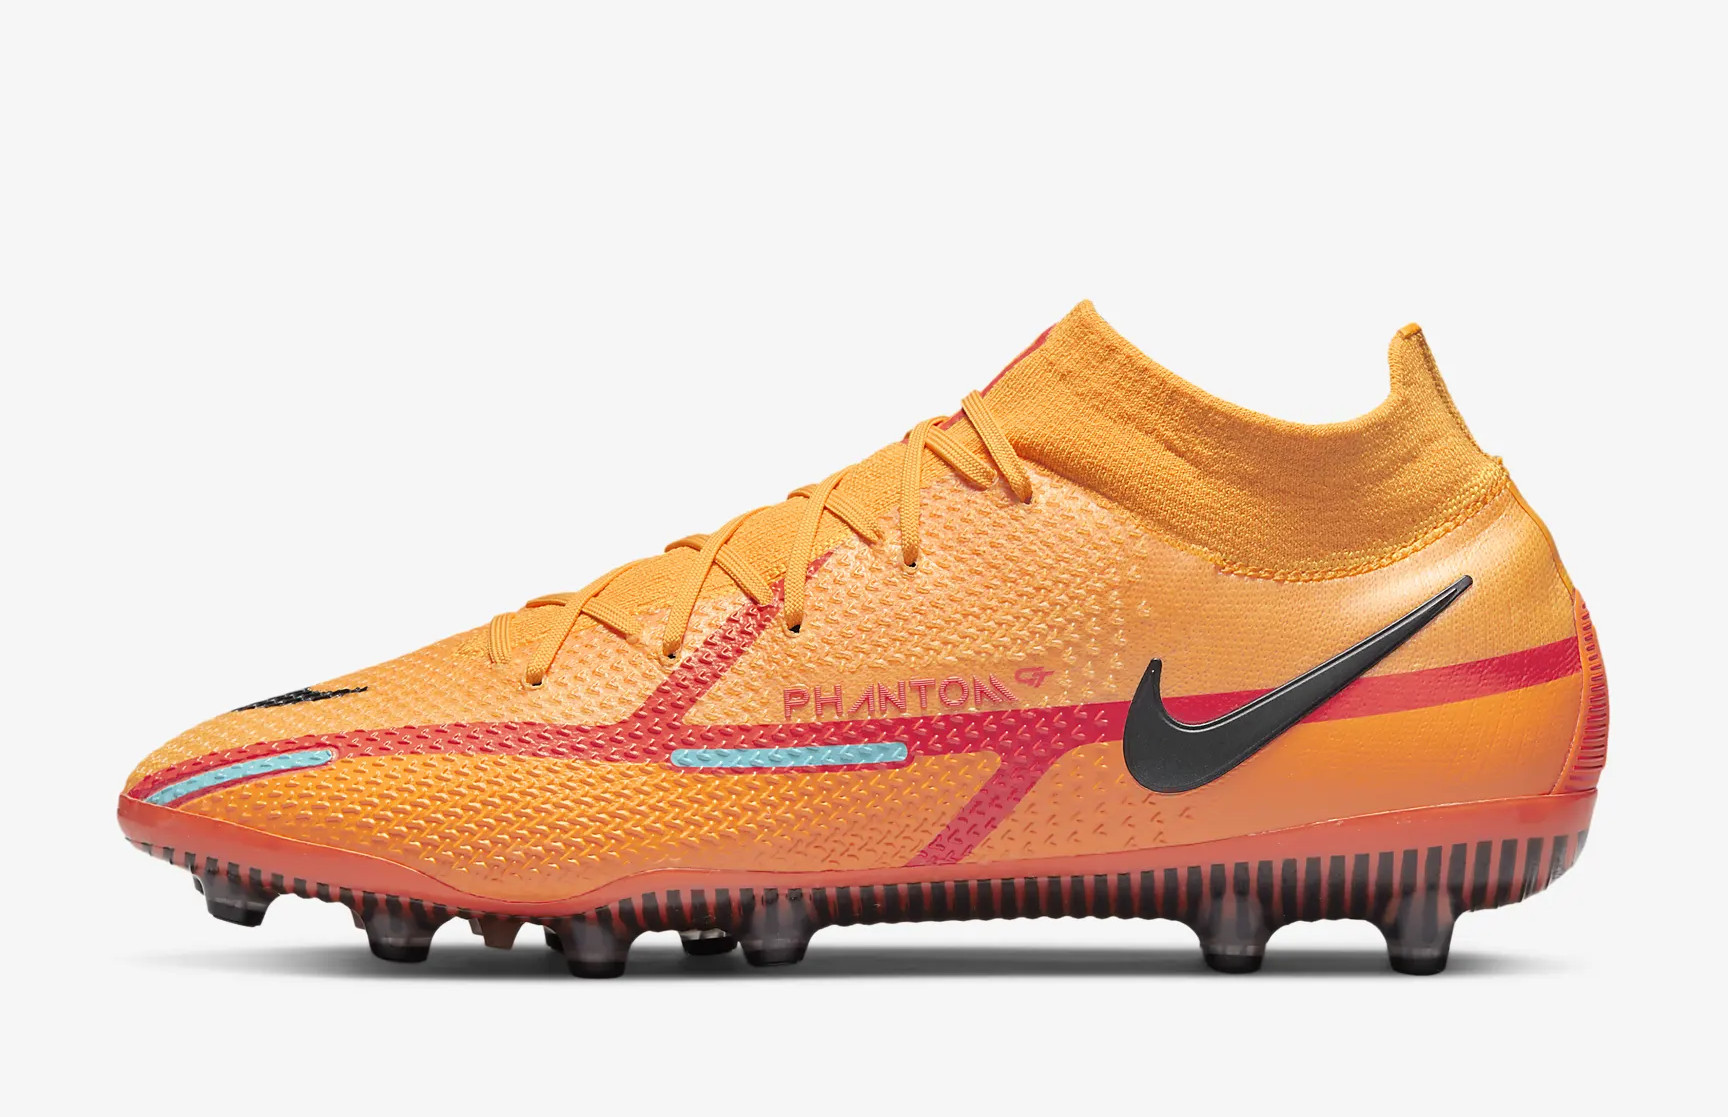 Oranje Phantom GT II voetbalschoenen - Voetbal-schoenen.eu